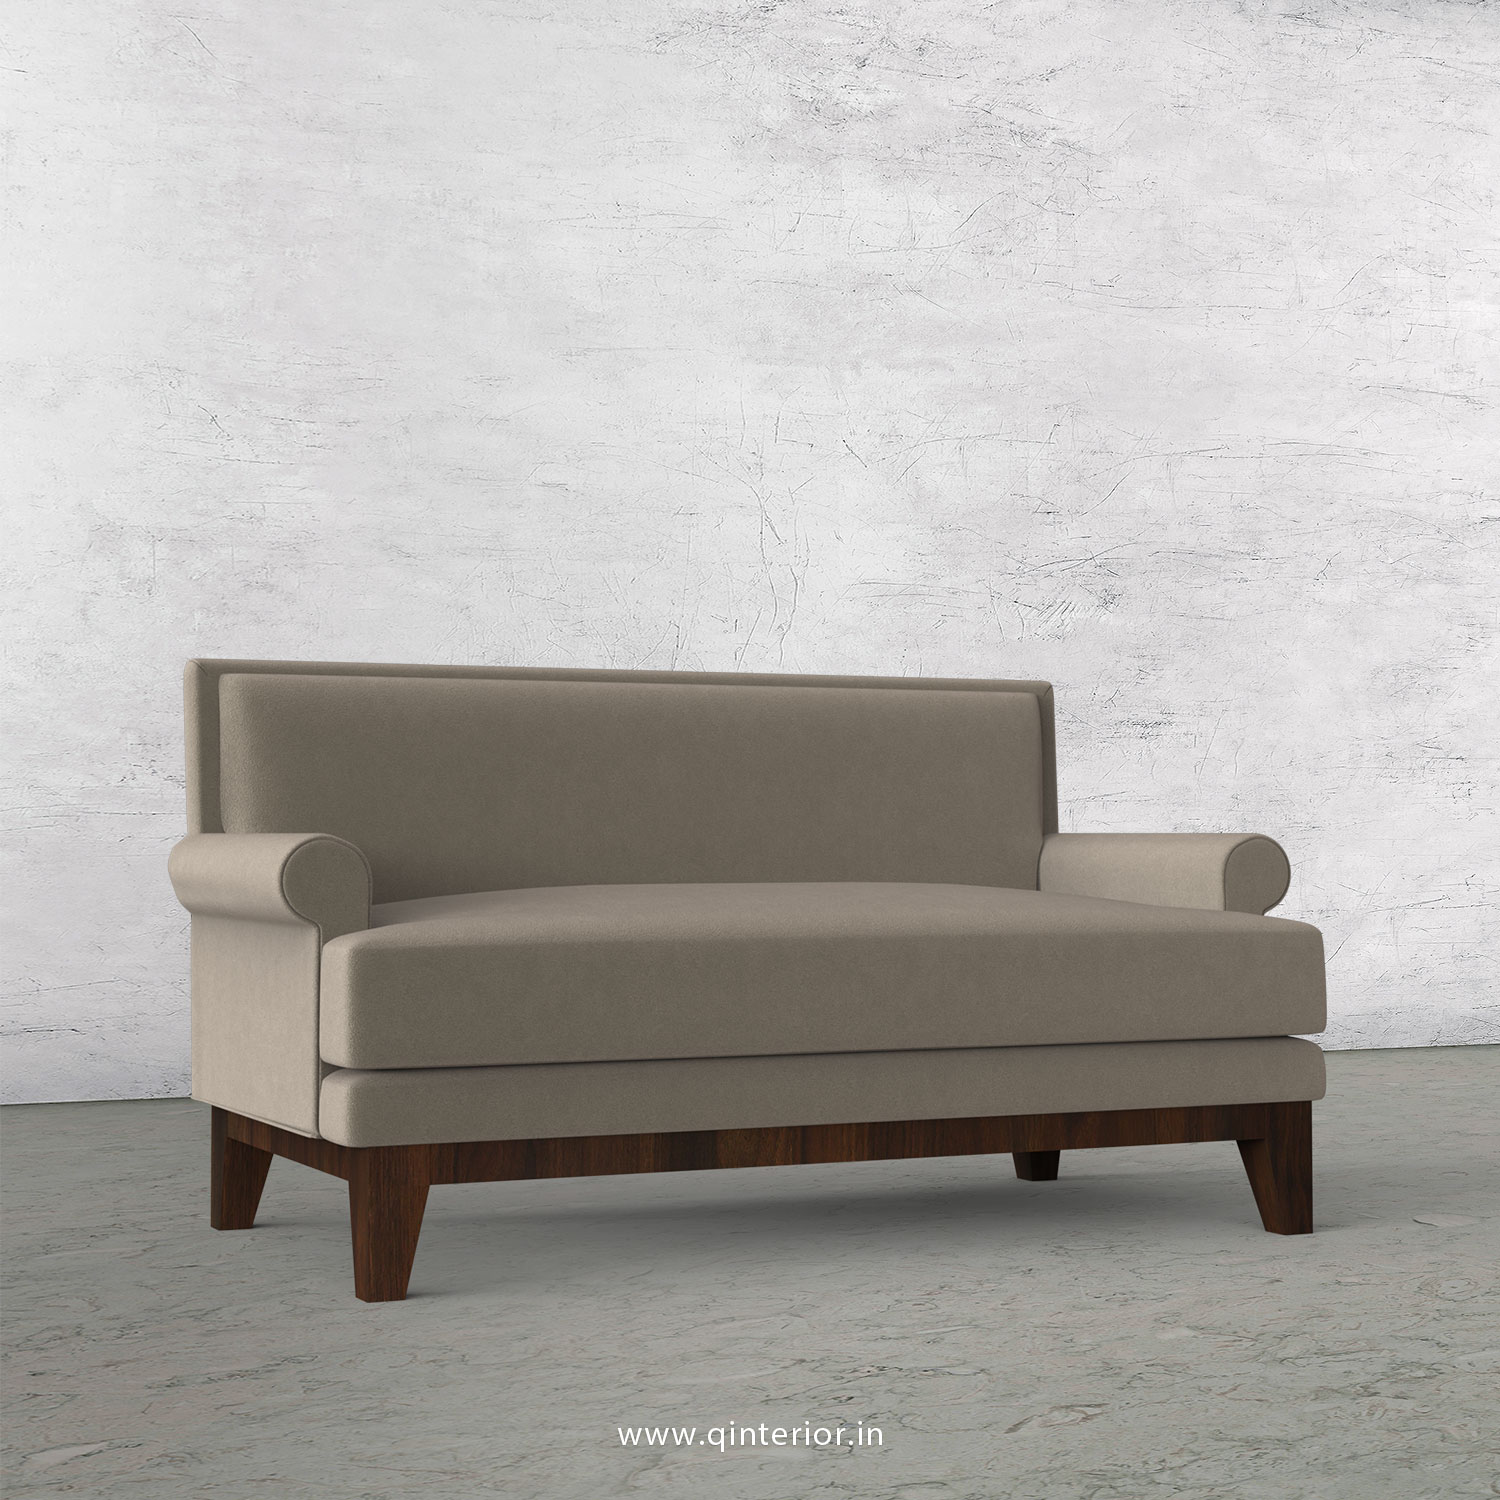 Aviana 2 Seater Sofa in Velvet Fabric - SFA001 VL12